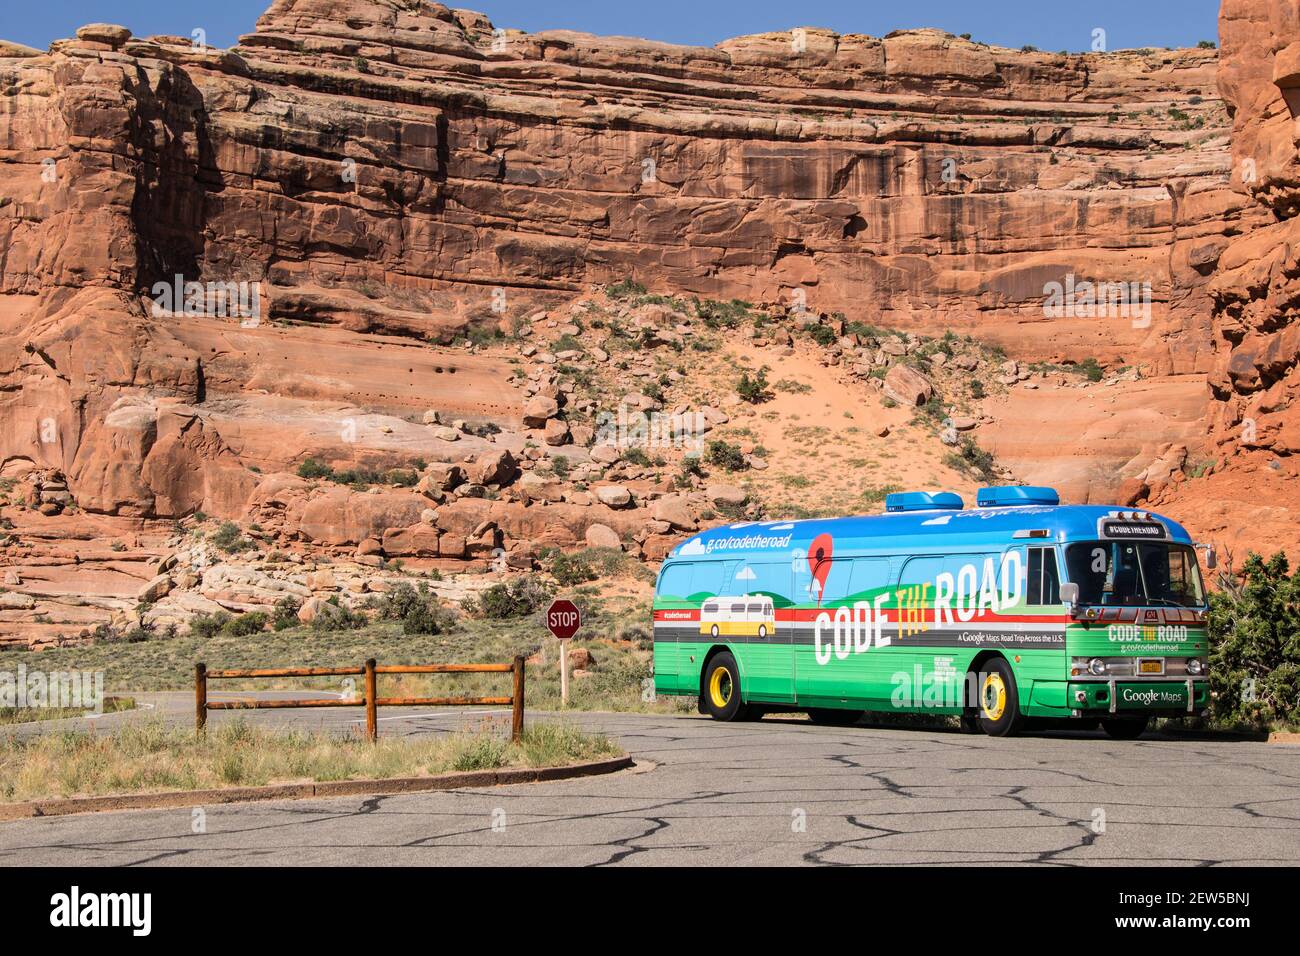 ARCHES NATIONAL PARK, UTAH, USA - 3. JUNI 2015: Google Code der Road Bus, der die USA für die Straßenkartierung bereist, parkt im Arches National Park, Utah. Stockfoto